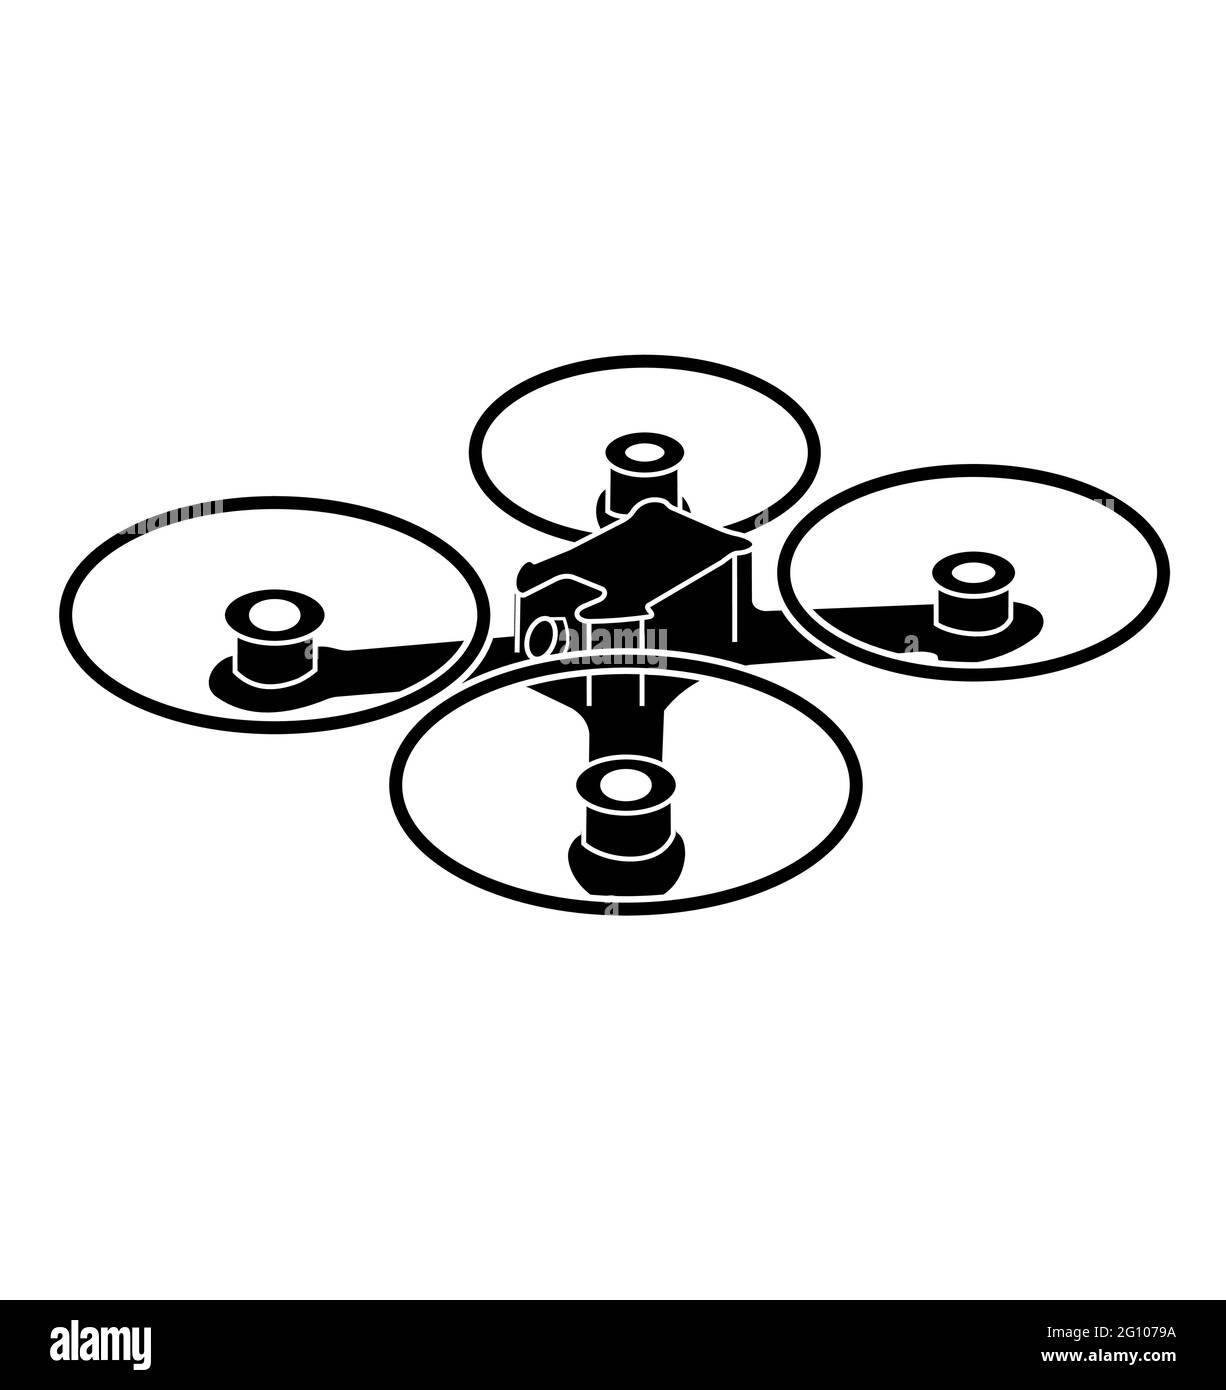 Un quadcopter ou un drone, le dessin est un drone de course ou quad de course tiré sous un angle. Un quadricoptère comme celui-ci est également fait pour la course. Drones Illustration de Vecteur